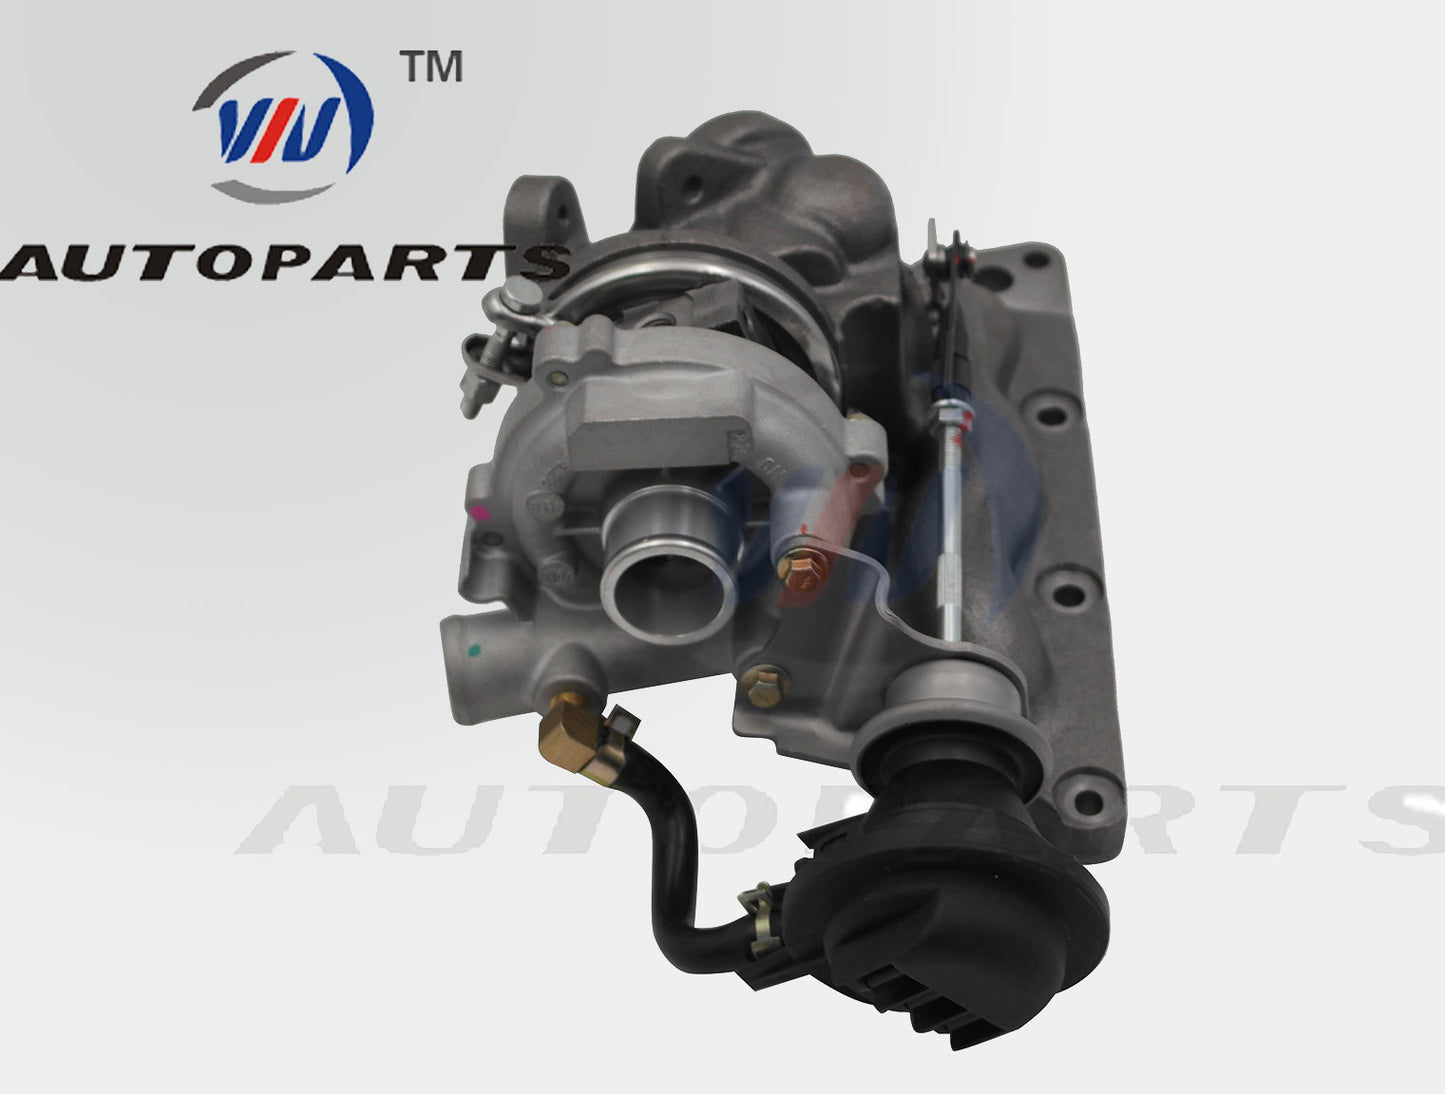 Billet Turbocharger 727211-5001S for Smart-MCC M160 0.7L Gasoline Engine